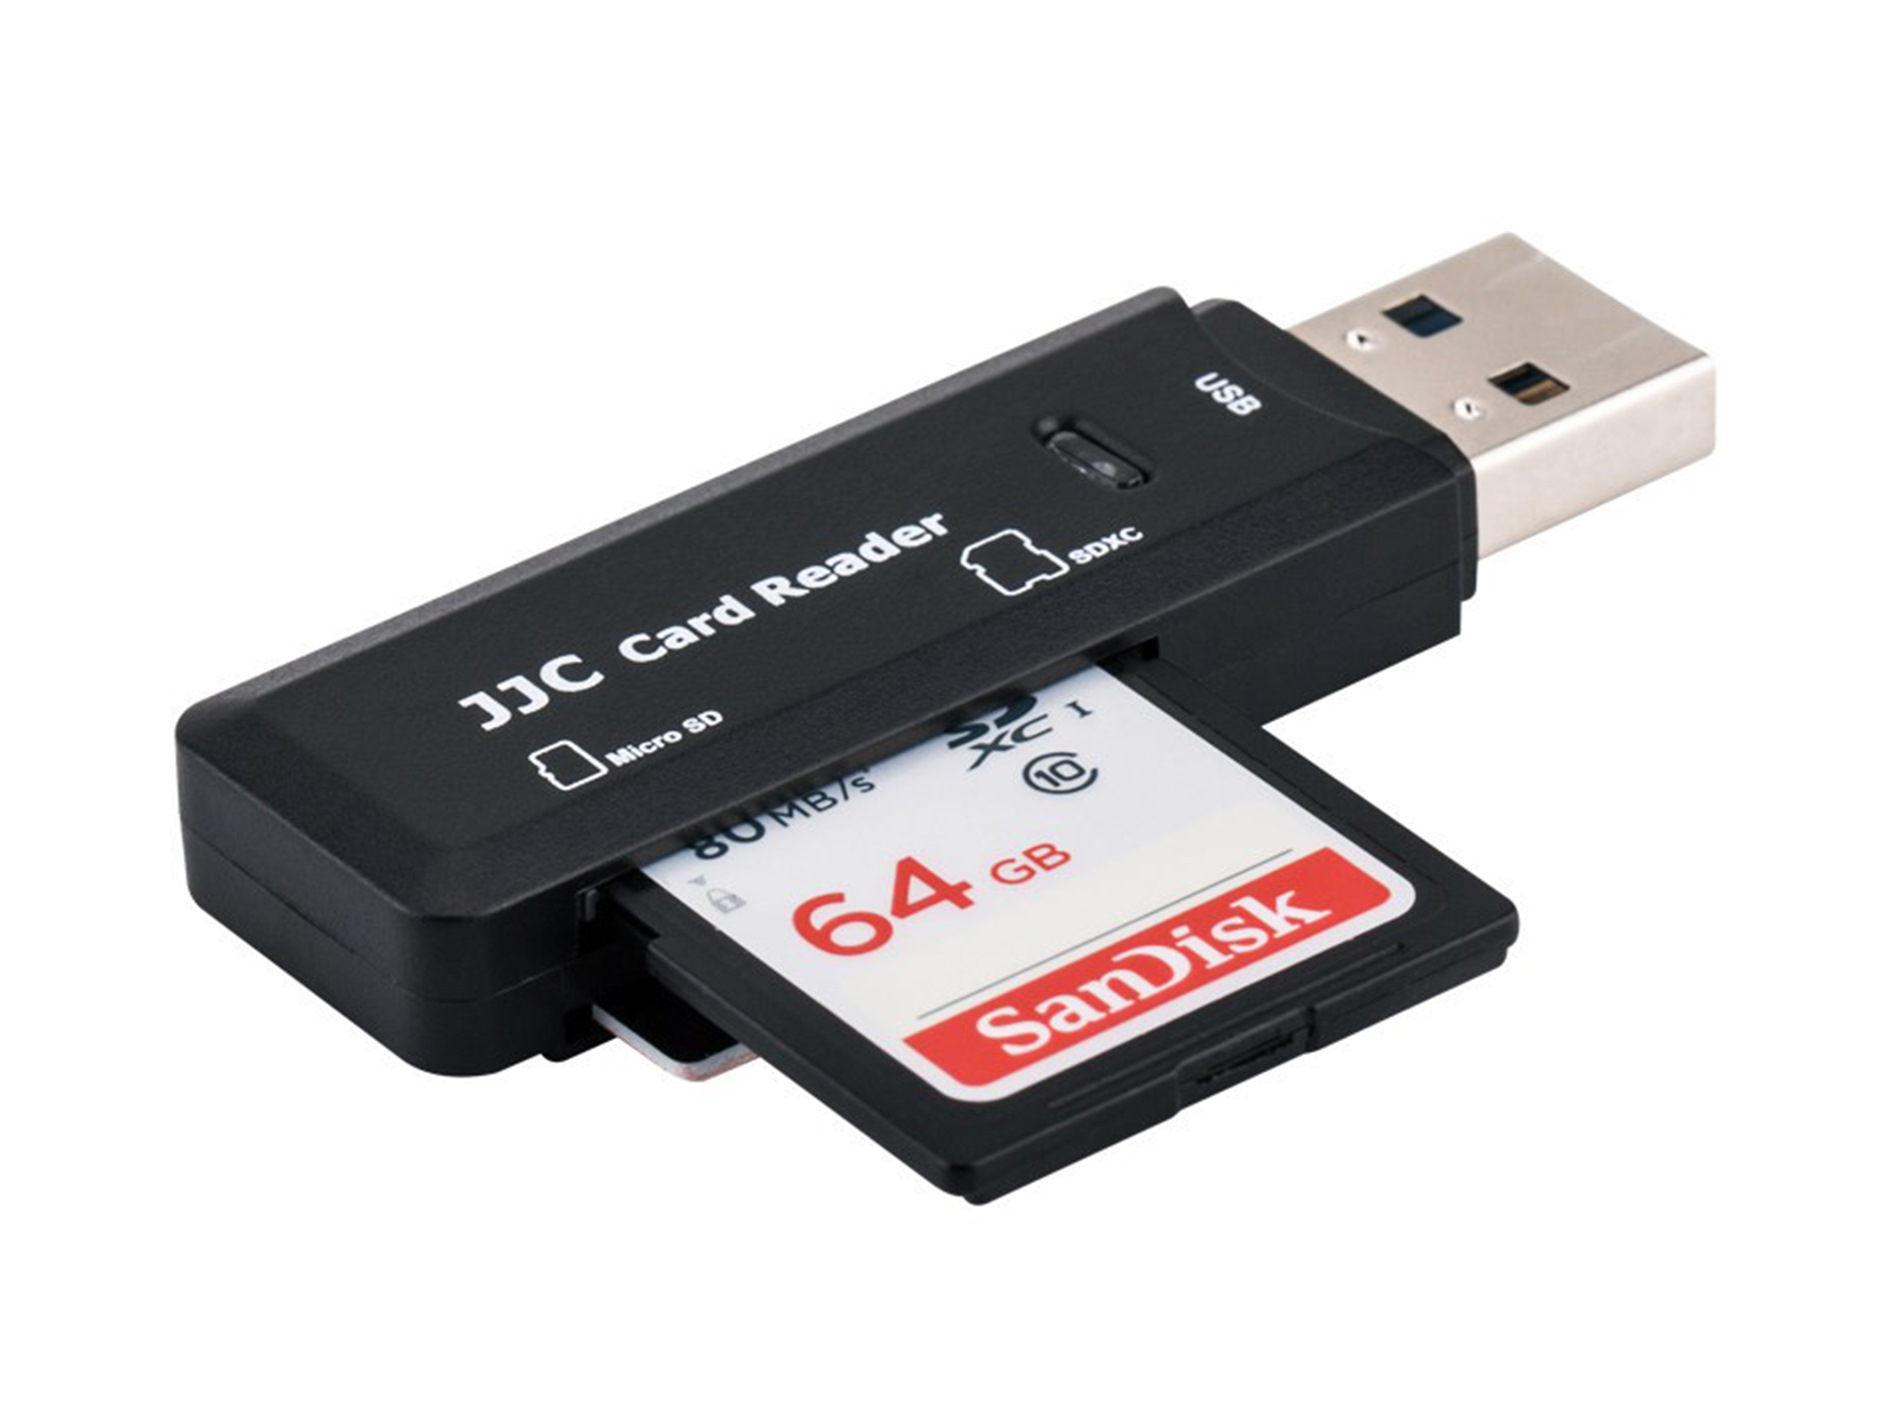 Переходник для сд. Кардридер адаптер carte SD. Переходник с флешку на MICROSD для SD Card. Картридер MICROSD USB 3.0. Юсб флешка с адаптером для карты памяти.